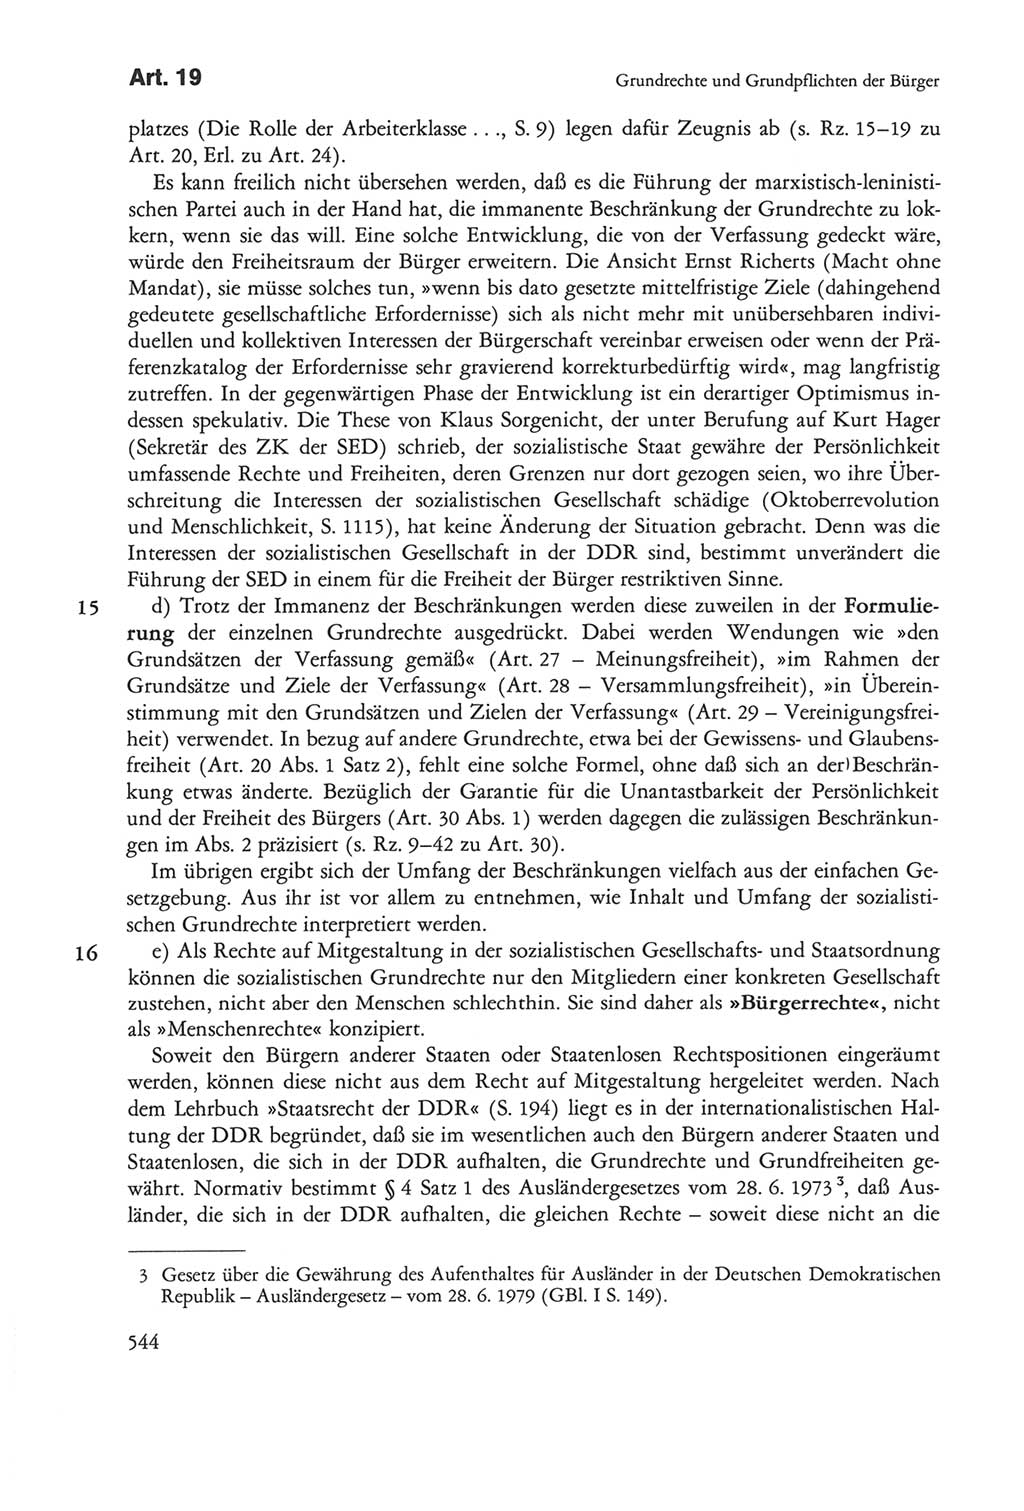 Die sozialistische Verfassung der Deutschen Demokratischen Republik (DDR), Kommentar mit einem Nachtrag 1997, Seite 544 (Soz. Verf. DDR Komm. Nachtr. 1997, S. 544)